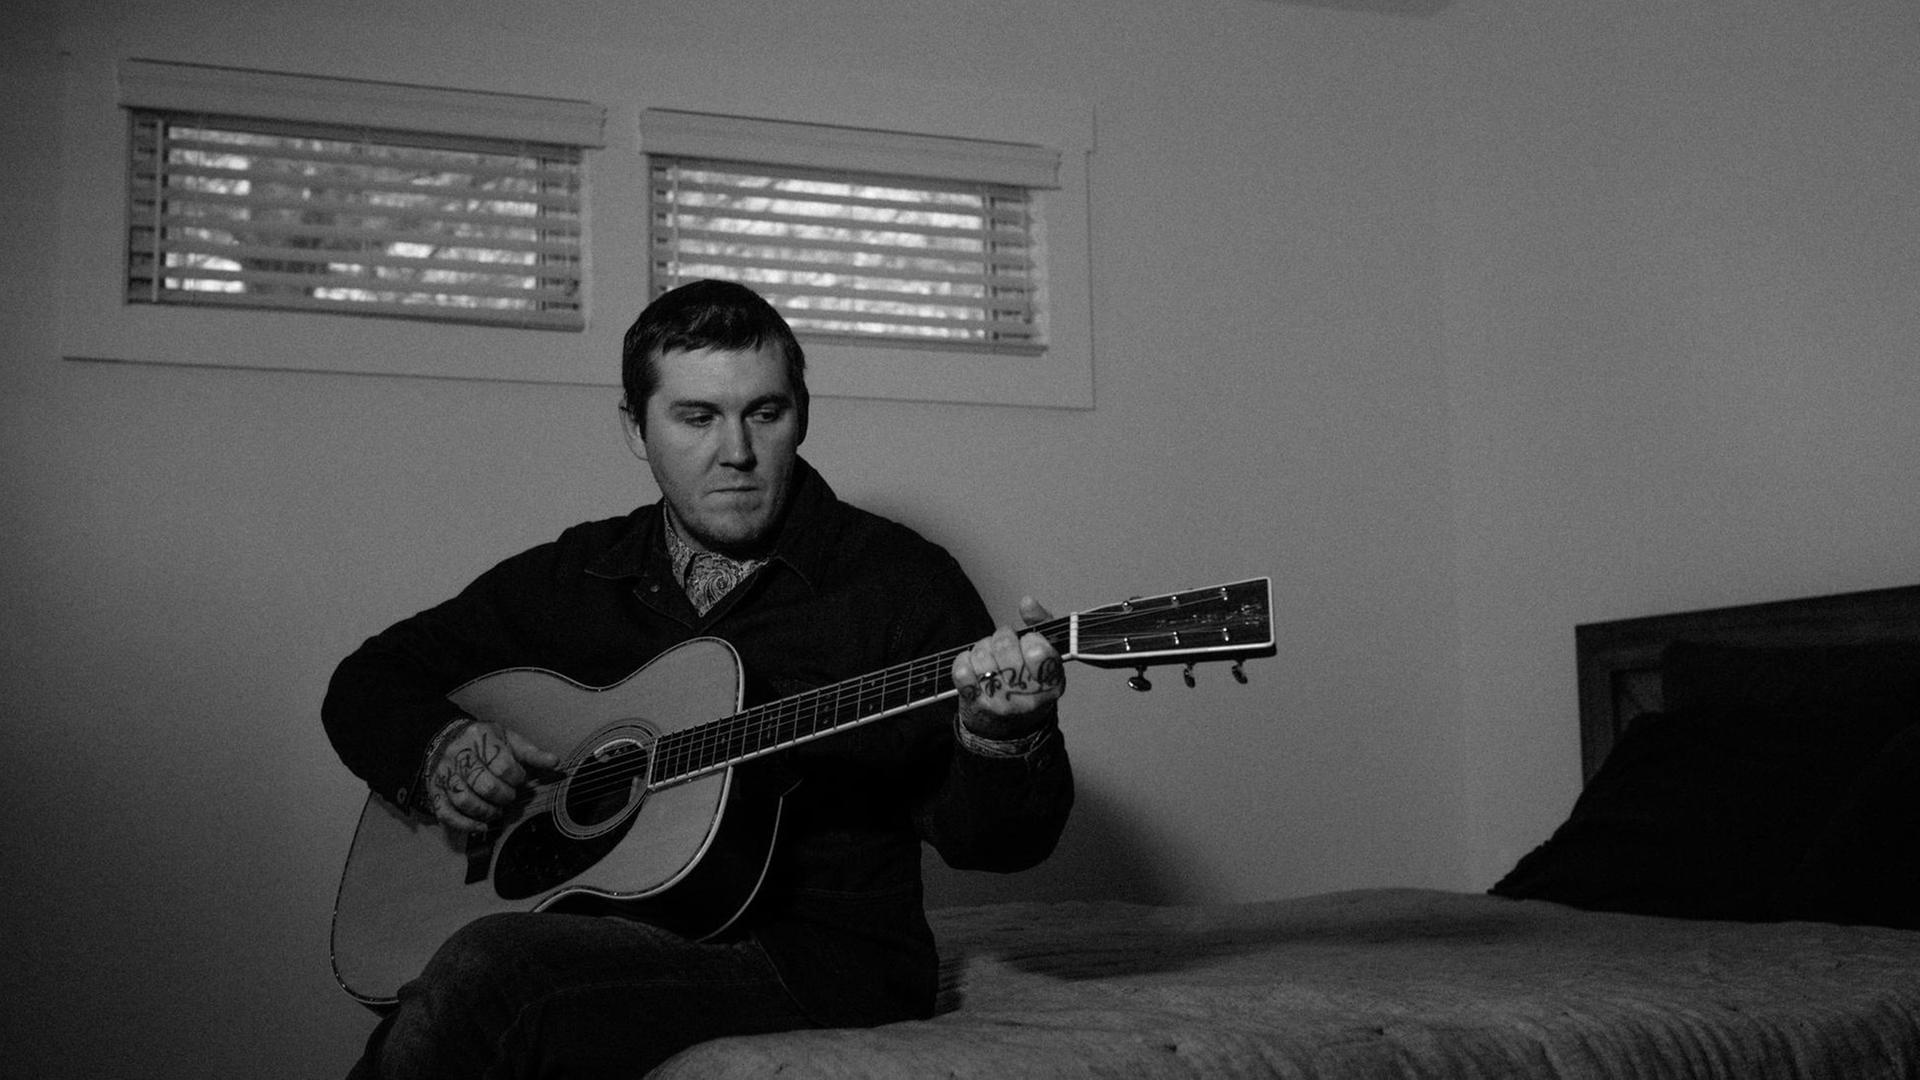 Ein Mann mit kurzen schwarzen Haaren sitzt in einem dunklen Zimmer auf einem Bett und spielt akustische Gitarre.